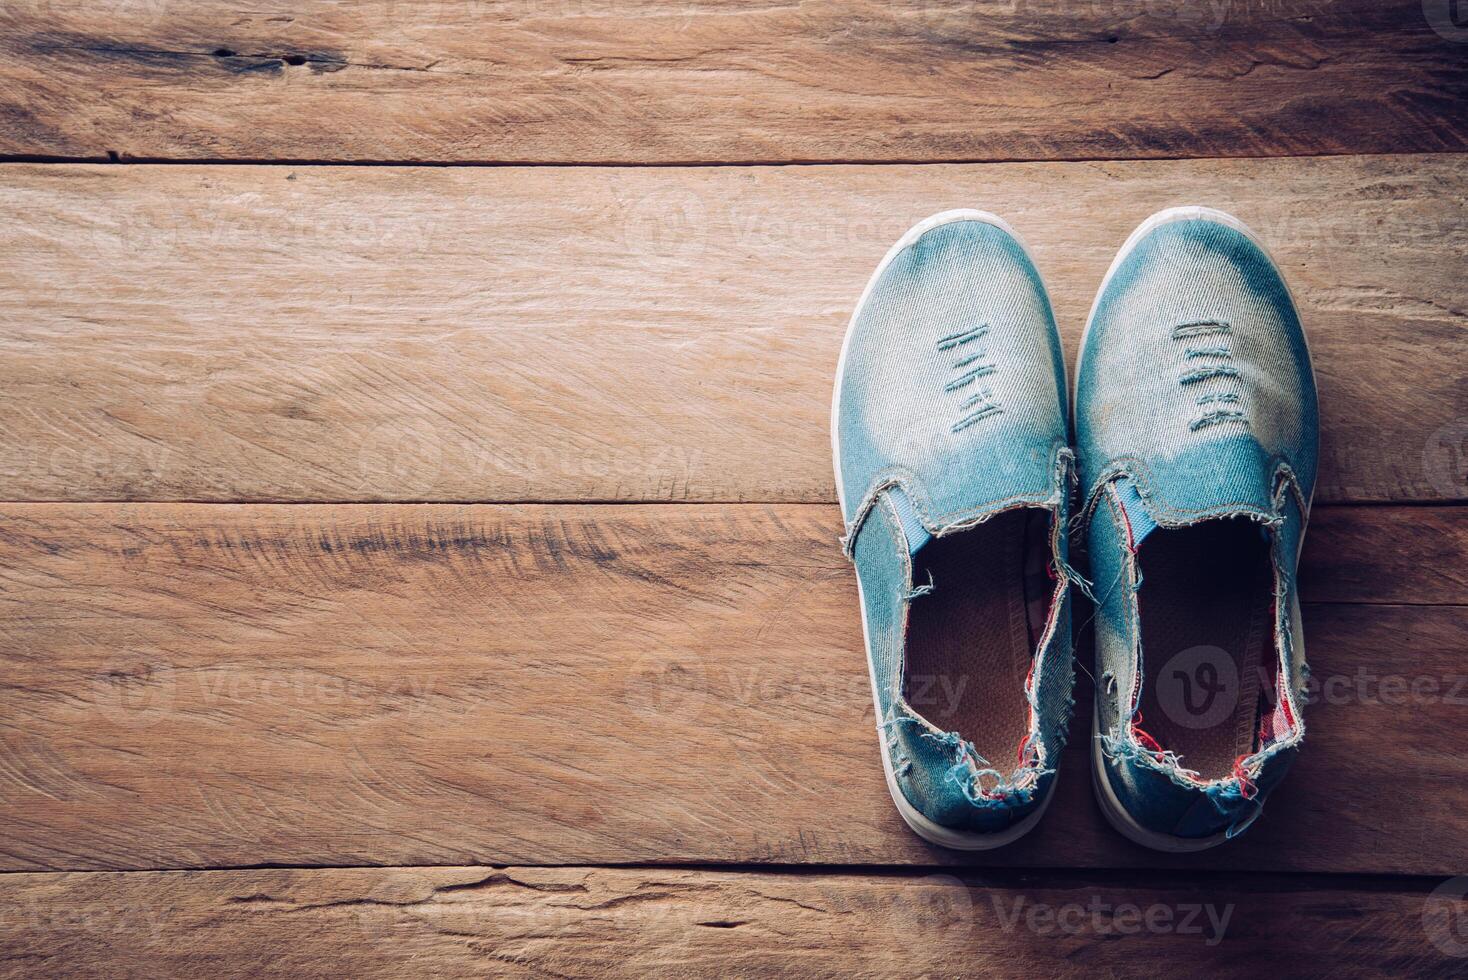 sapatos para mulheres em a de madeira chão. foto